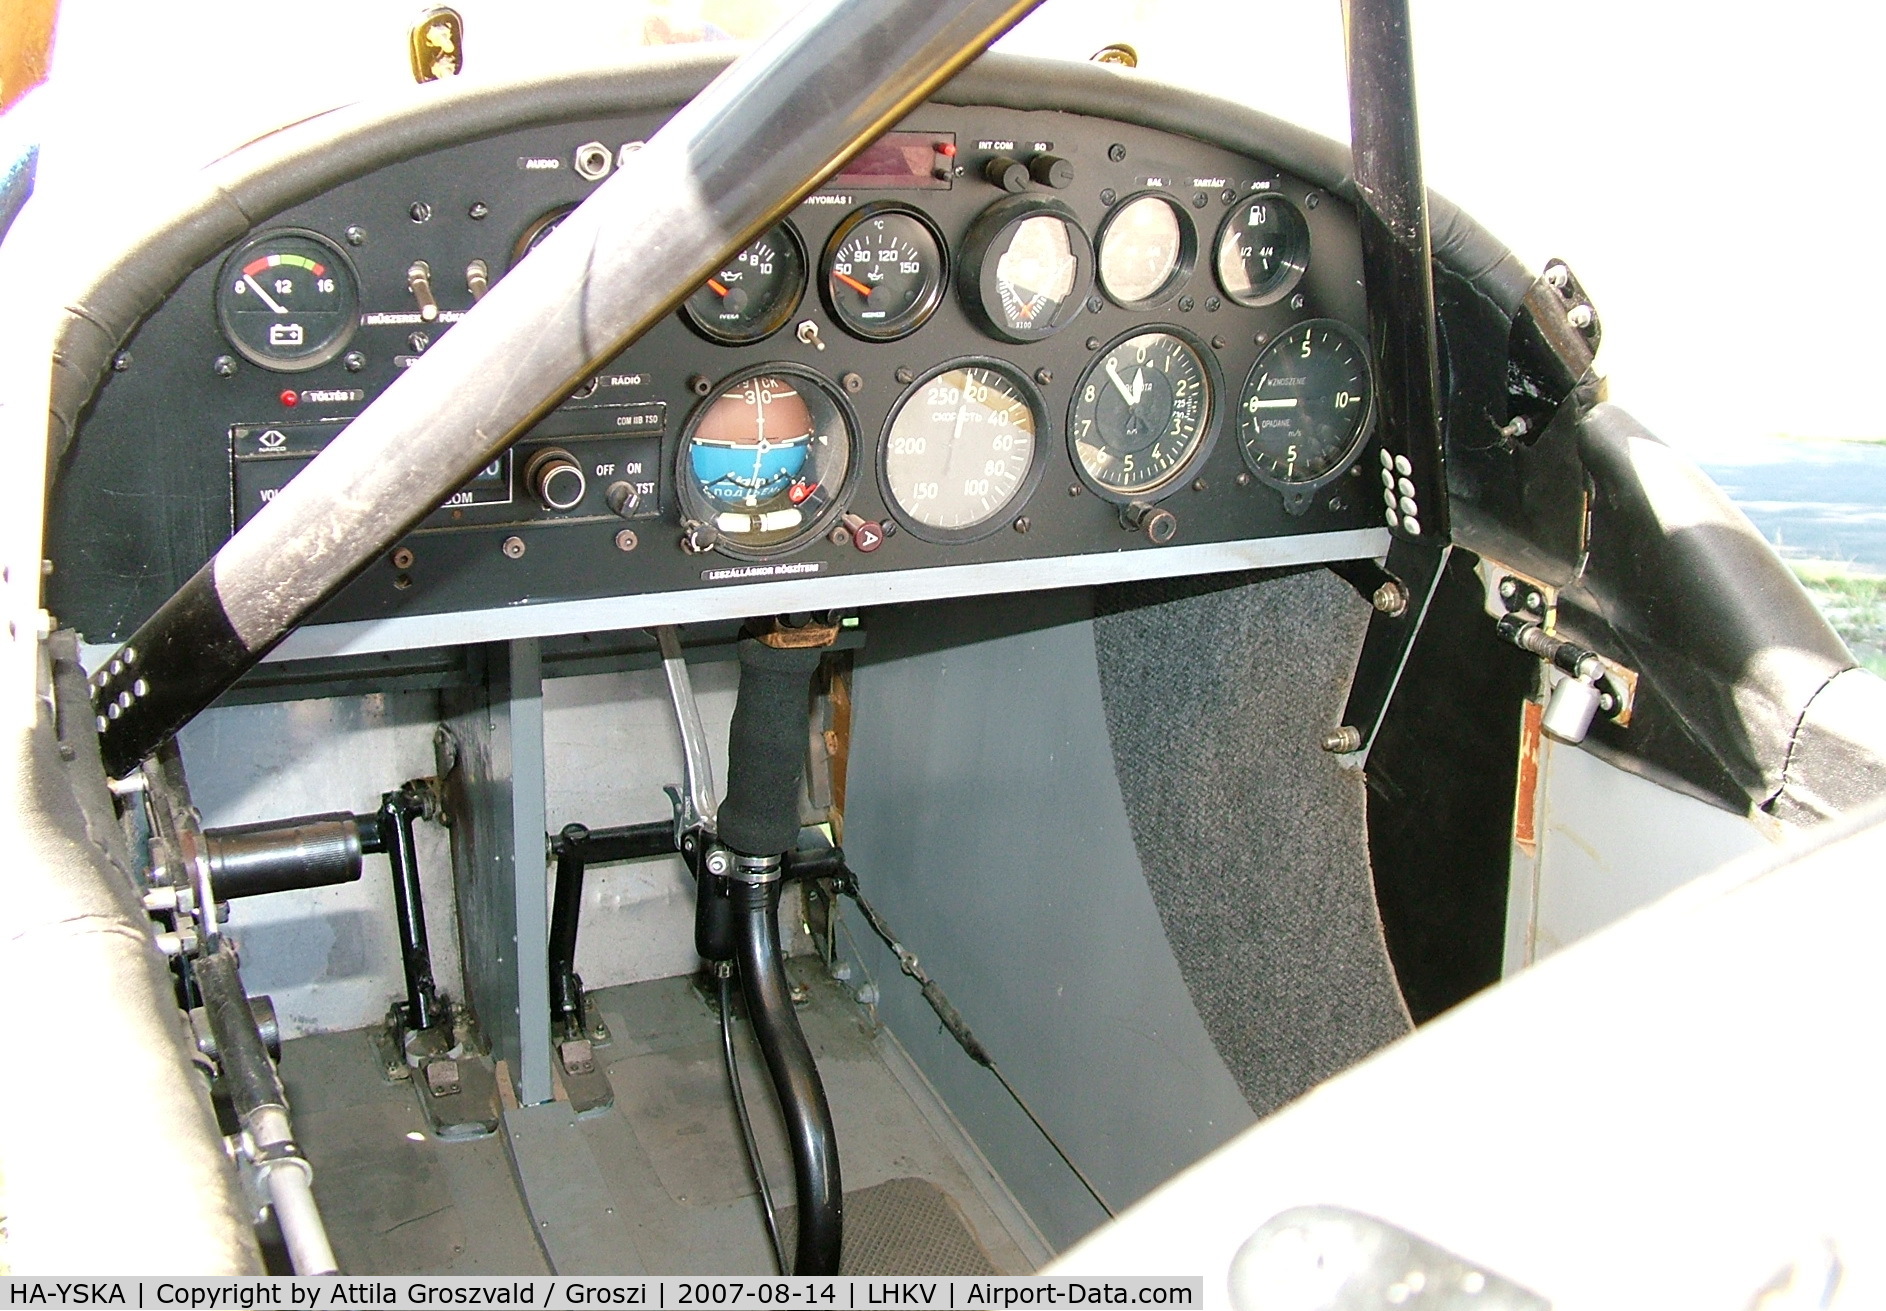 HA-YSKA, 2001 Fisher Classic C/N H001, Kaposújlak airport (LHKV) Hungary. Pilot-1 seat